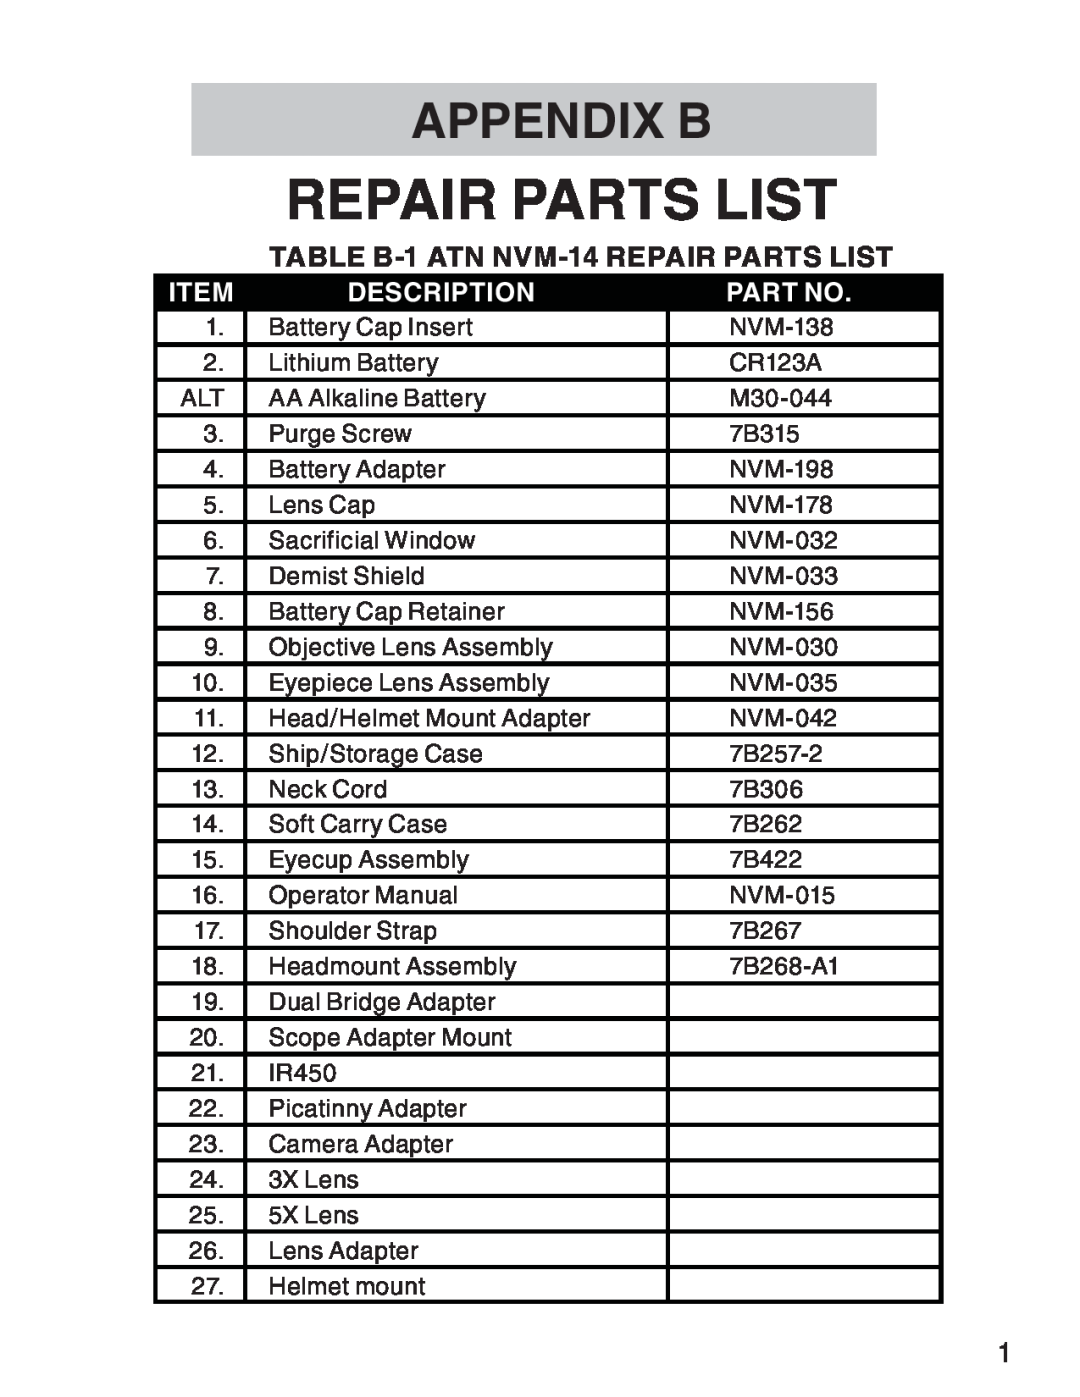 ATN 3 manual Appendix B, TABLE B-1 ATN NVM-14 Repair Parts List, Description 